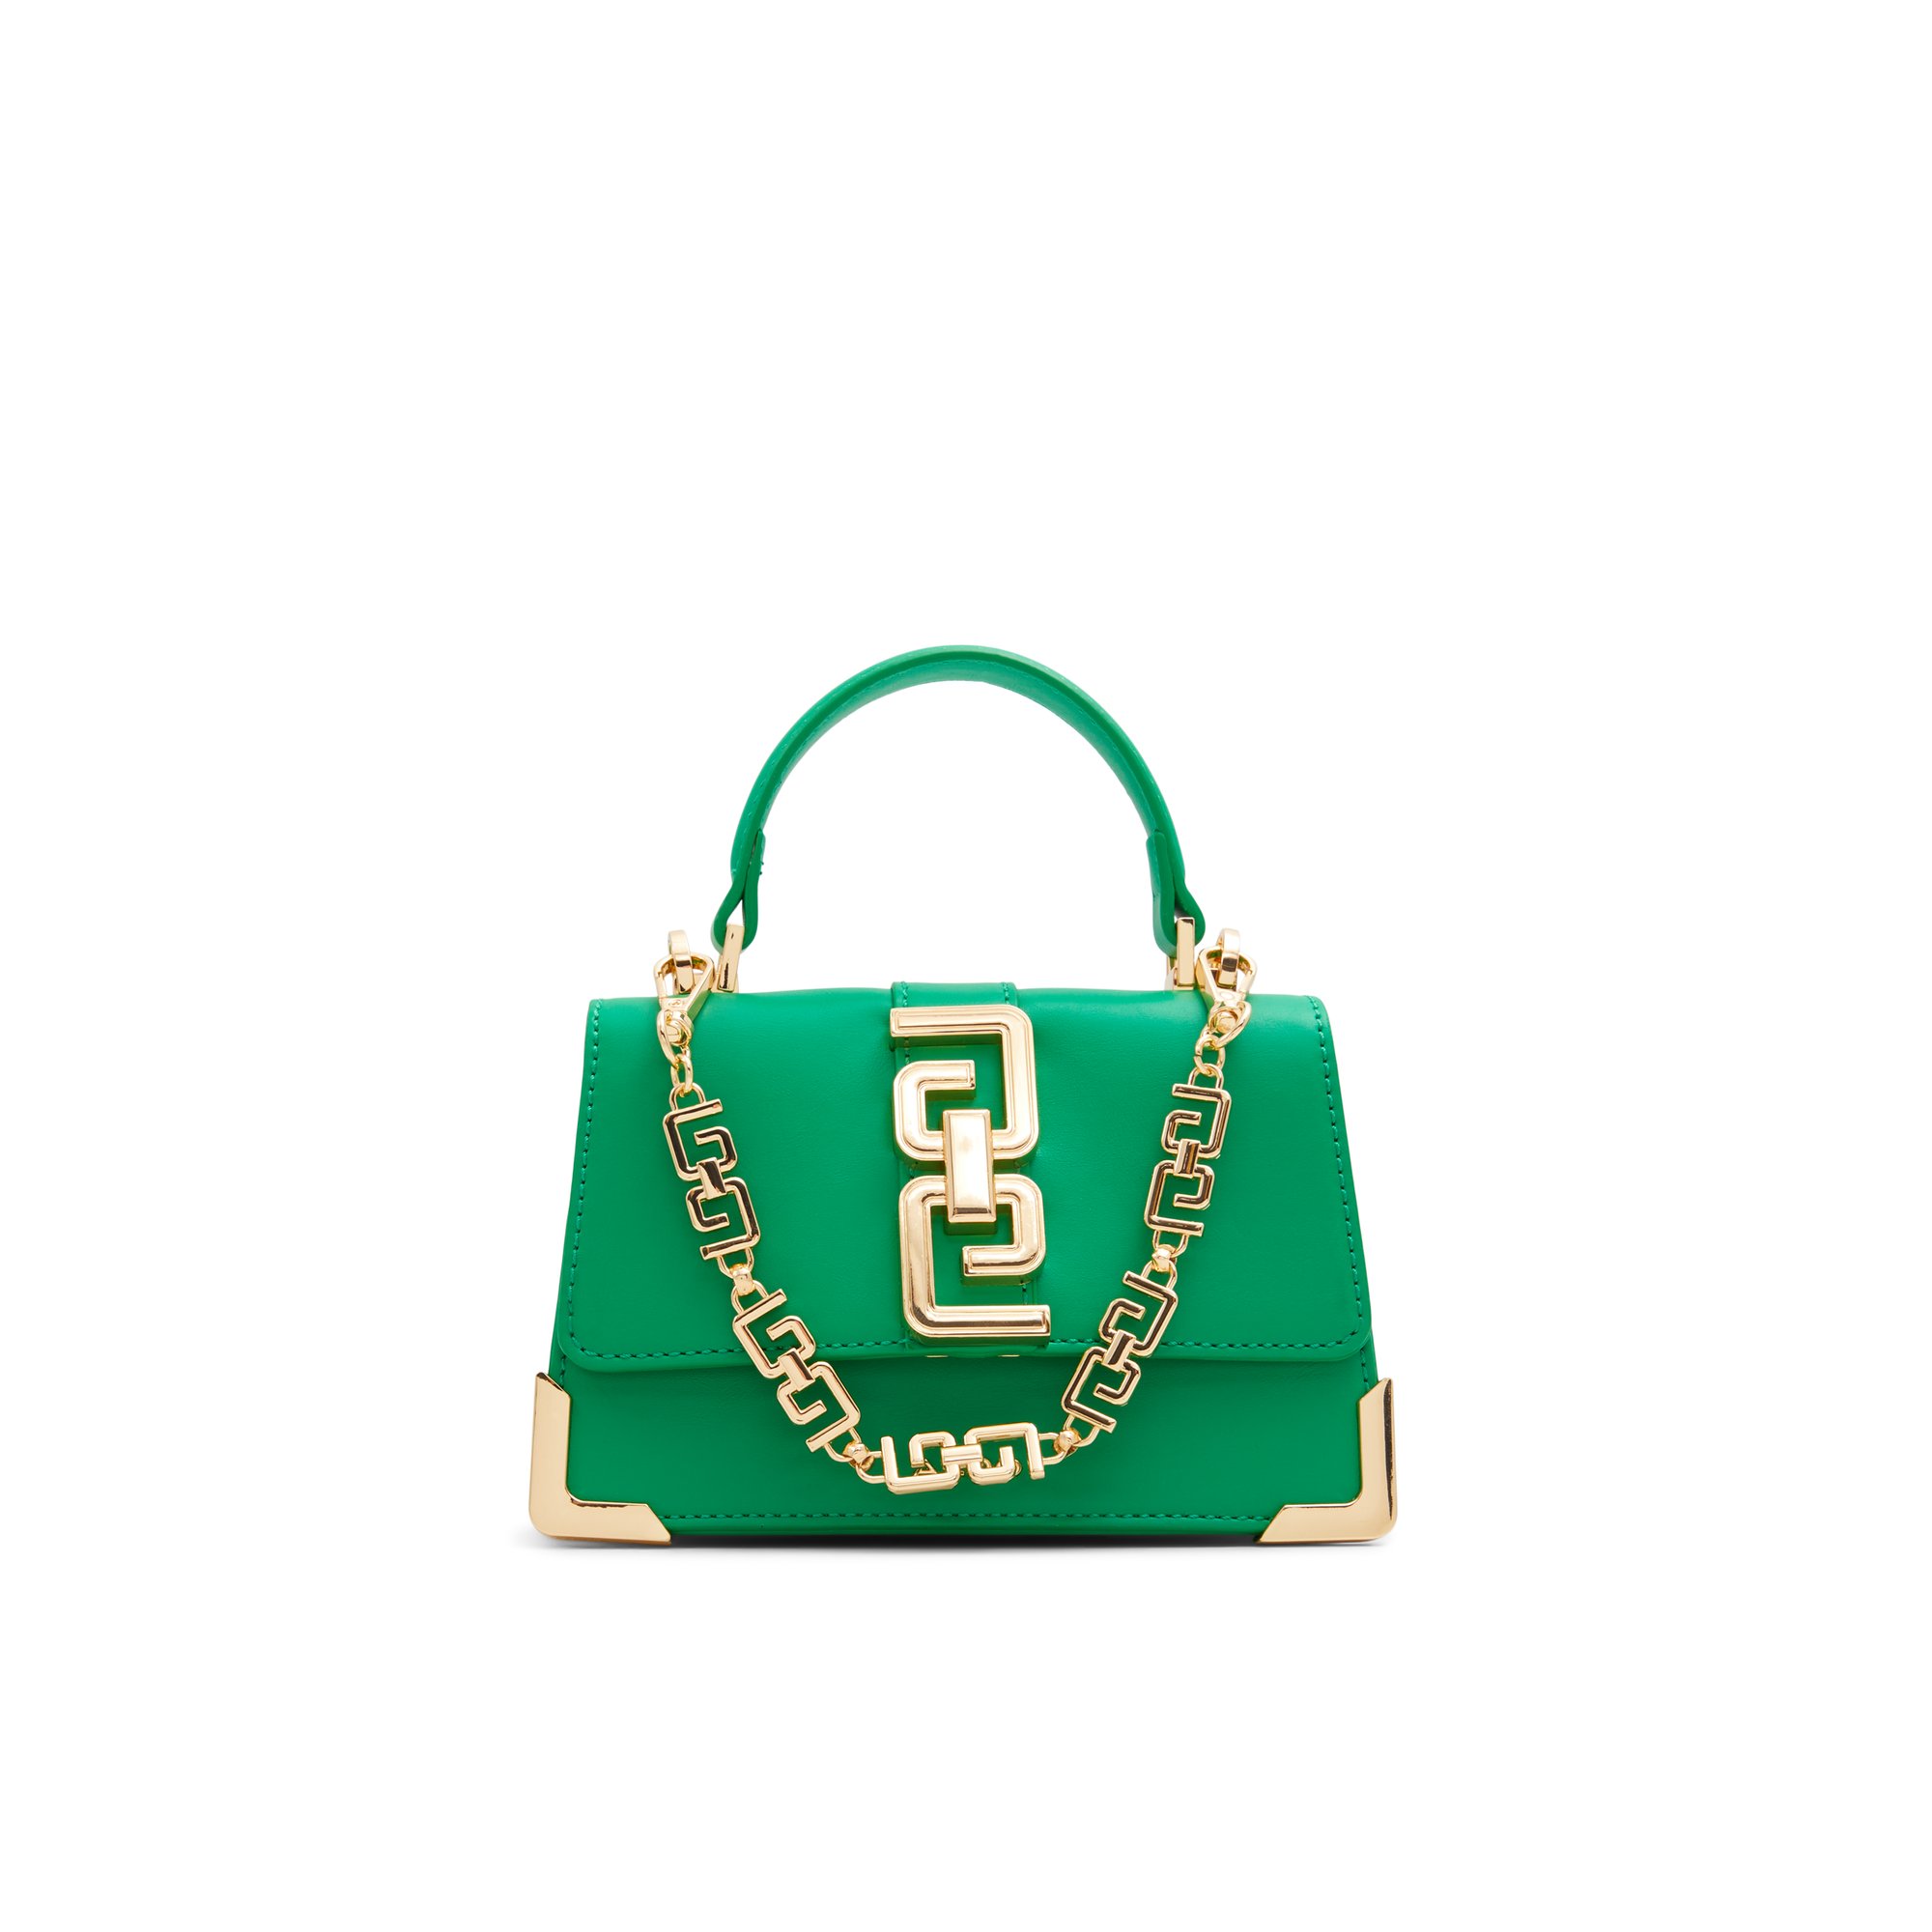 ALDO Ausseyx - Women's Handbag - Green